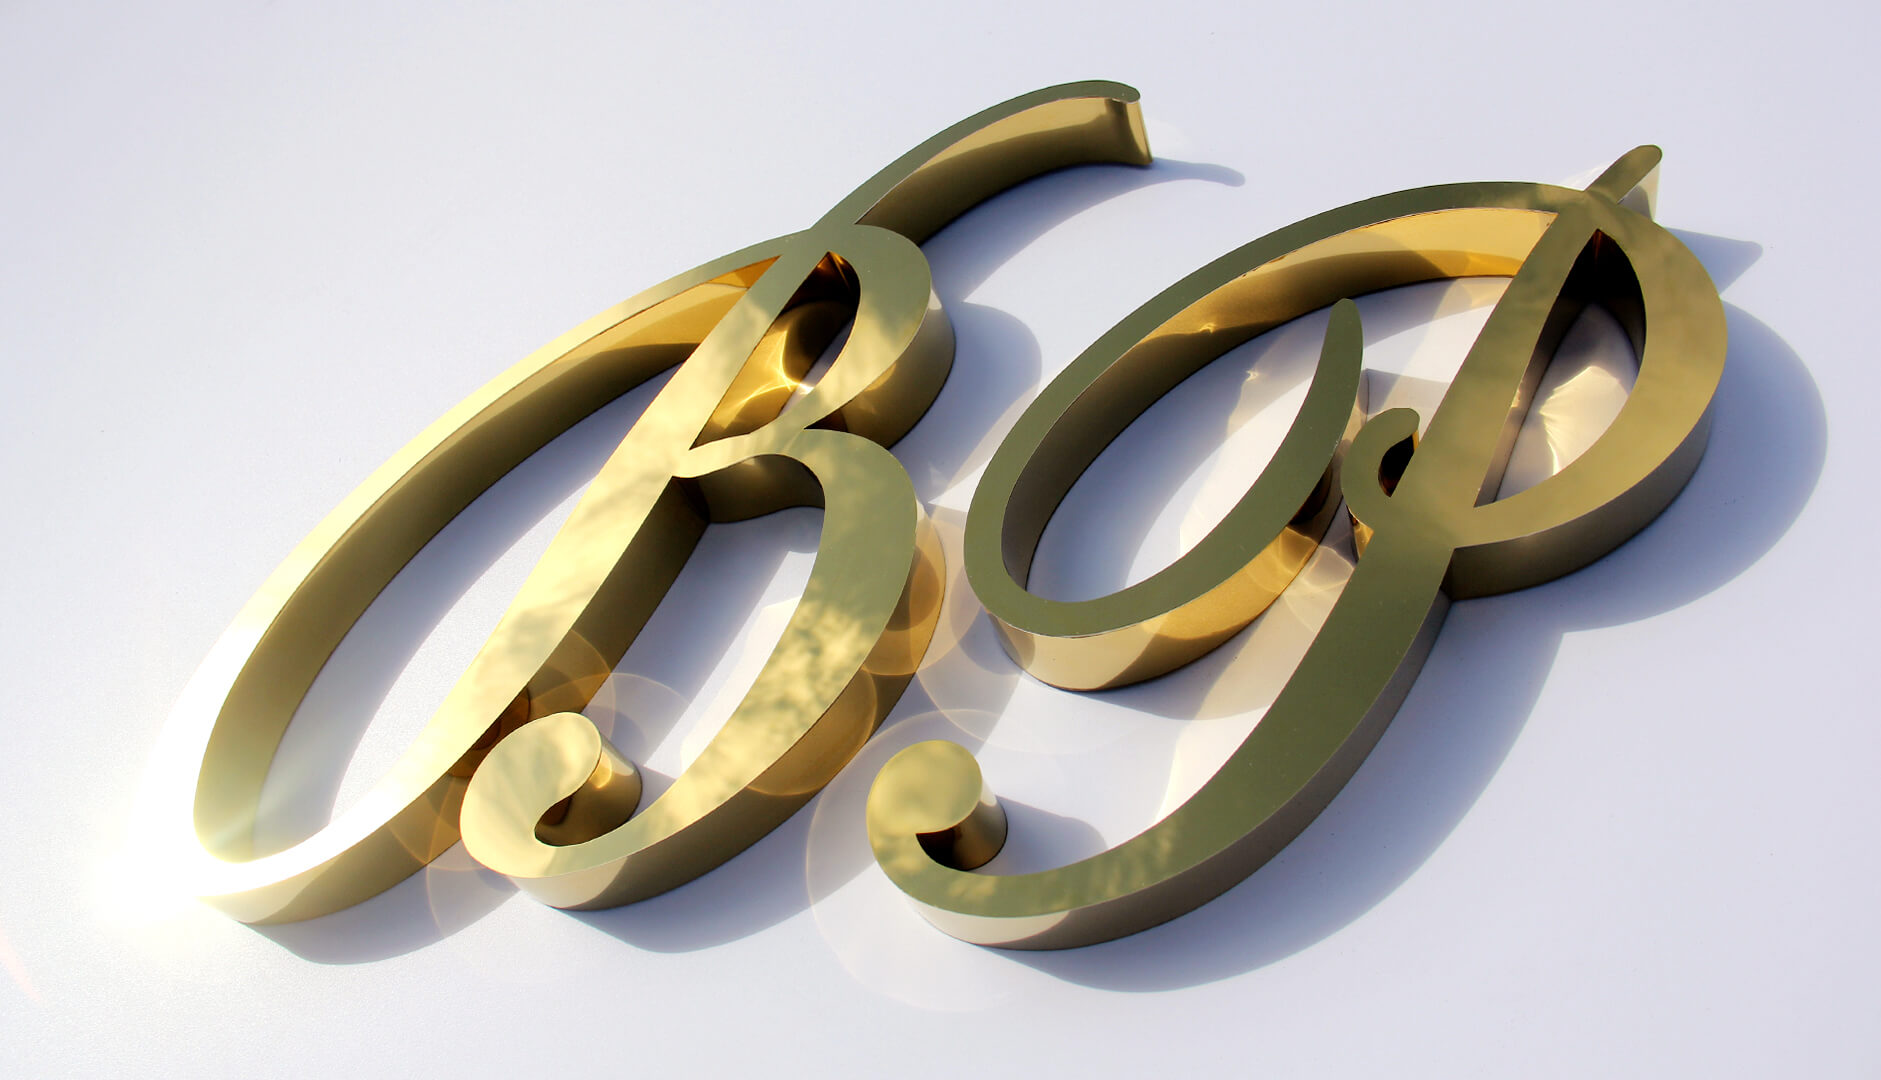 Buchstaben B und P in Gold - Goldene Buchstaben B und P, künstlerisch, einzigartig. Hergestellt aus rostfreiem Stahl.